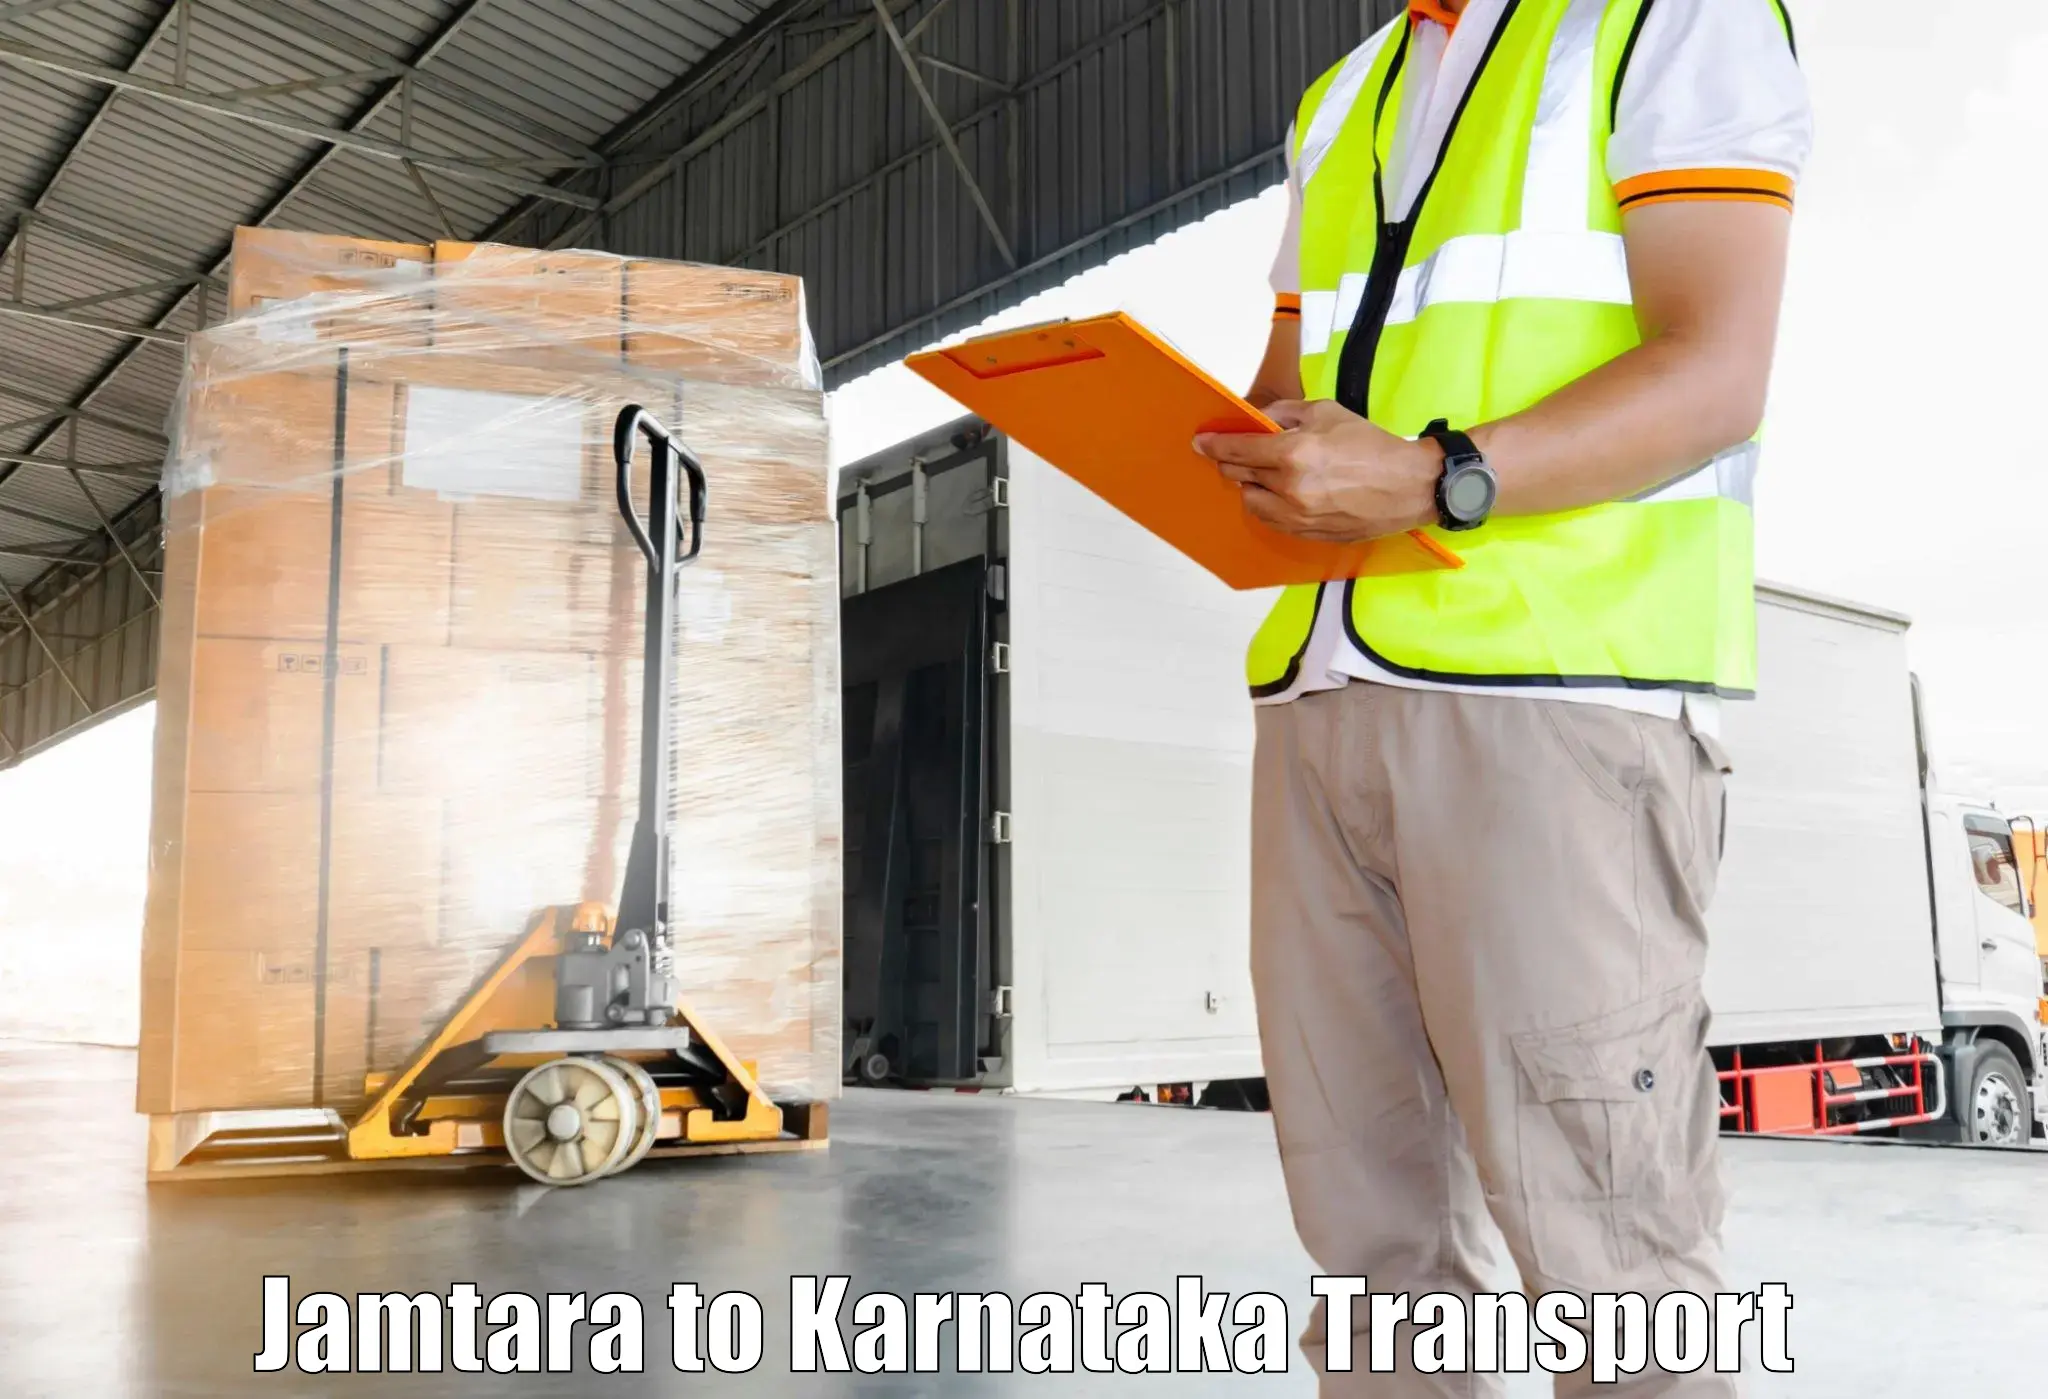 Container transport service Jamtara to Aland Kalaburagi